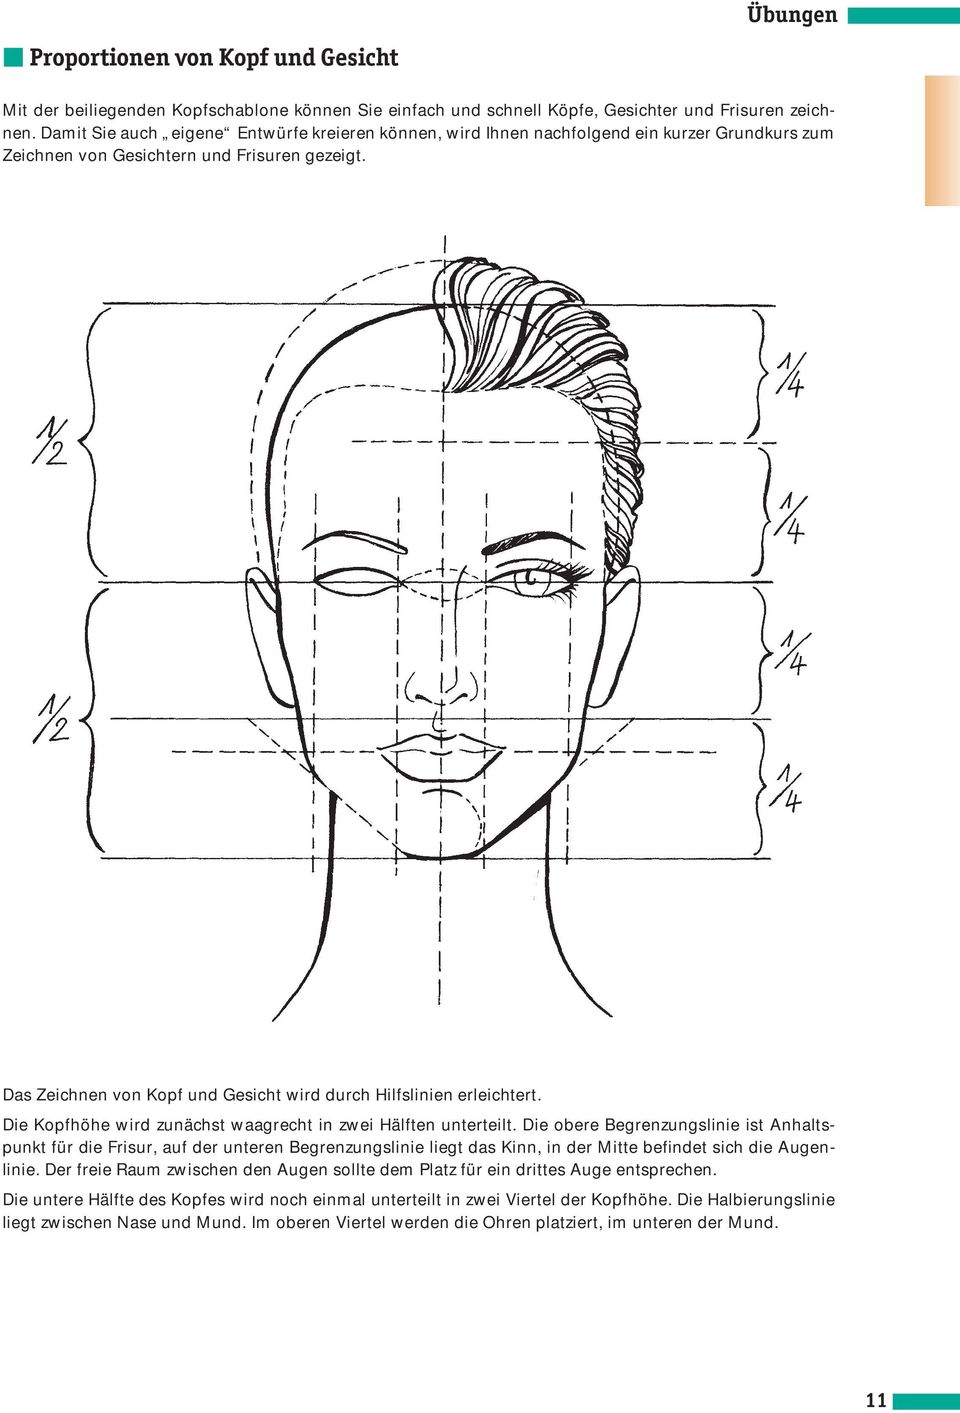 Das Zeichnen von Kopf und Gesicht wird durch Hilfslinien erleichtert. Die Kopfhöhe wird zunächst waagrecht in zwei Hälften unterteilt.